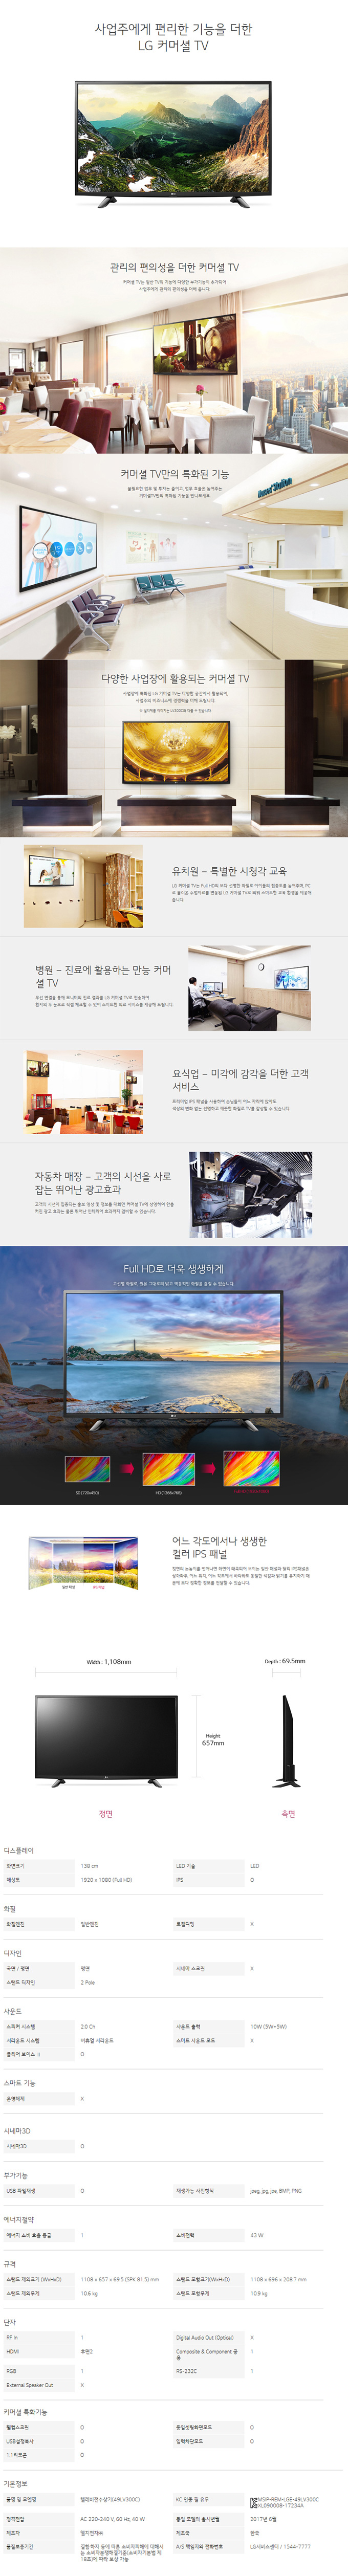 딜라이브 - LG 49인치 LED TV (49LV300C) 상세보기